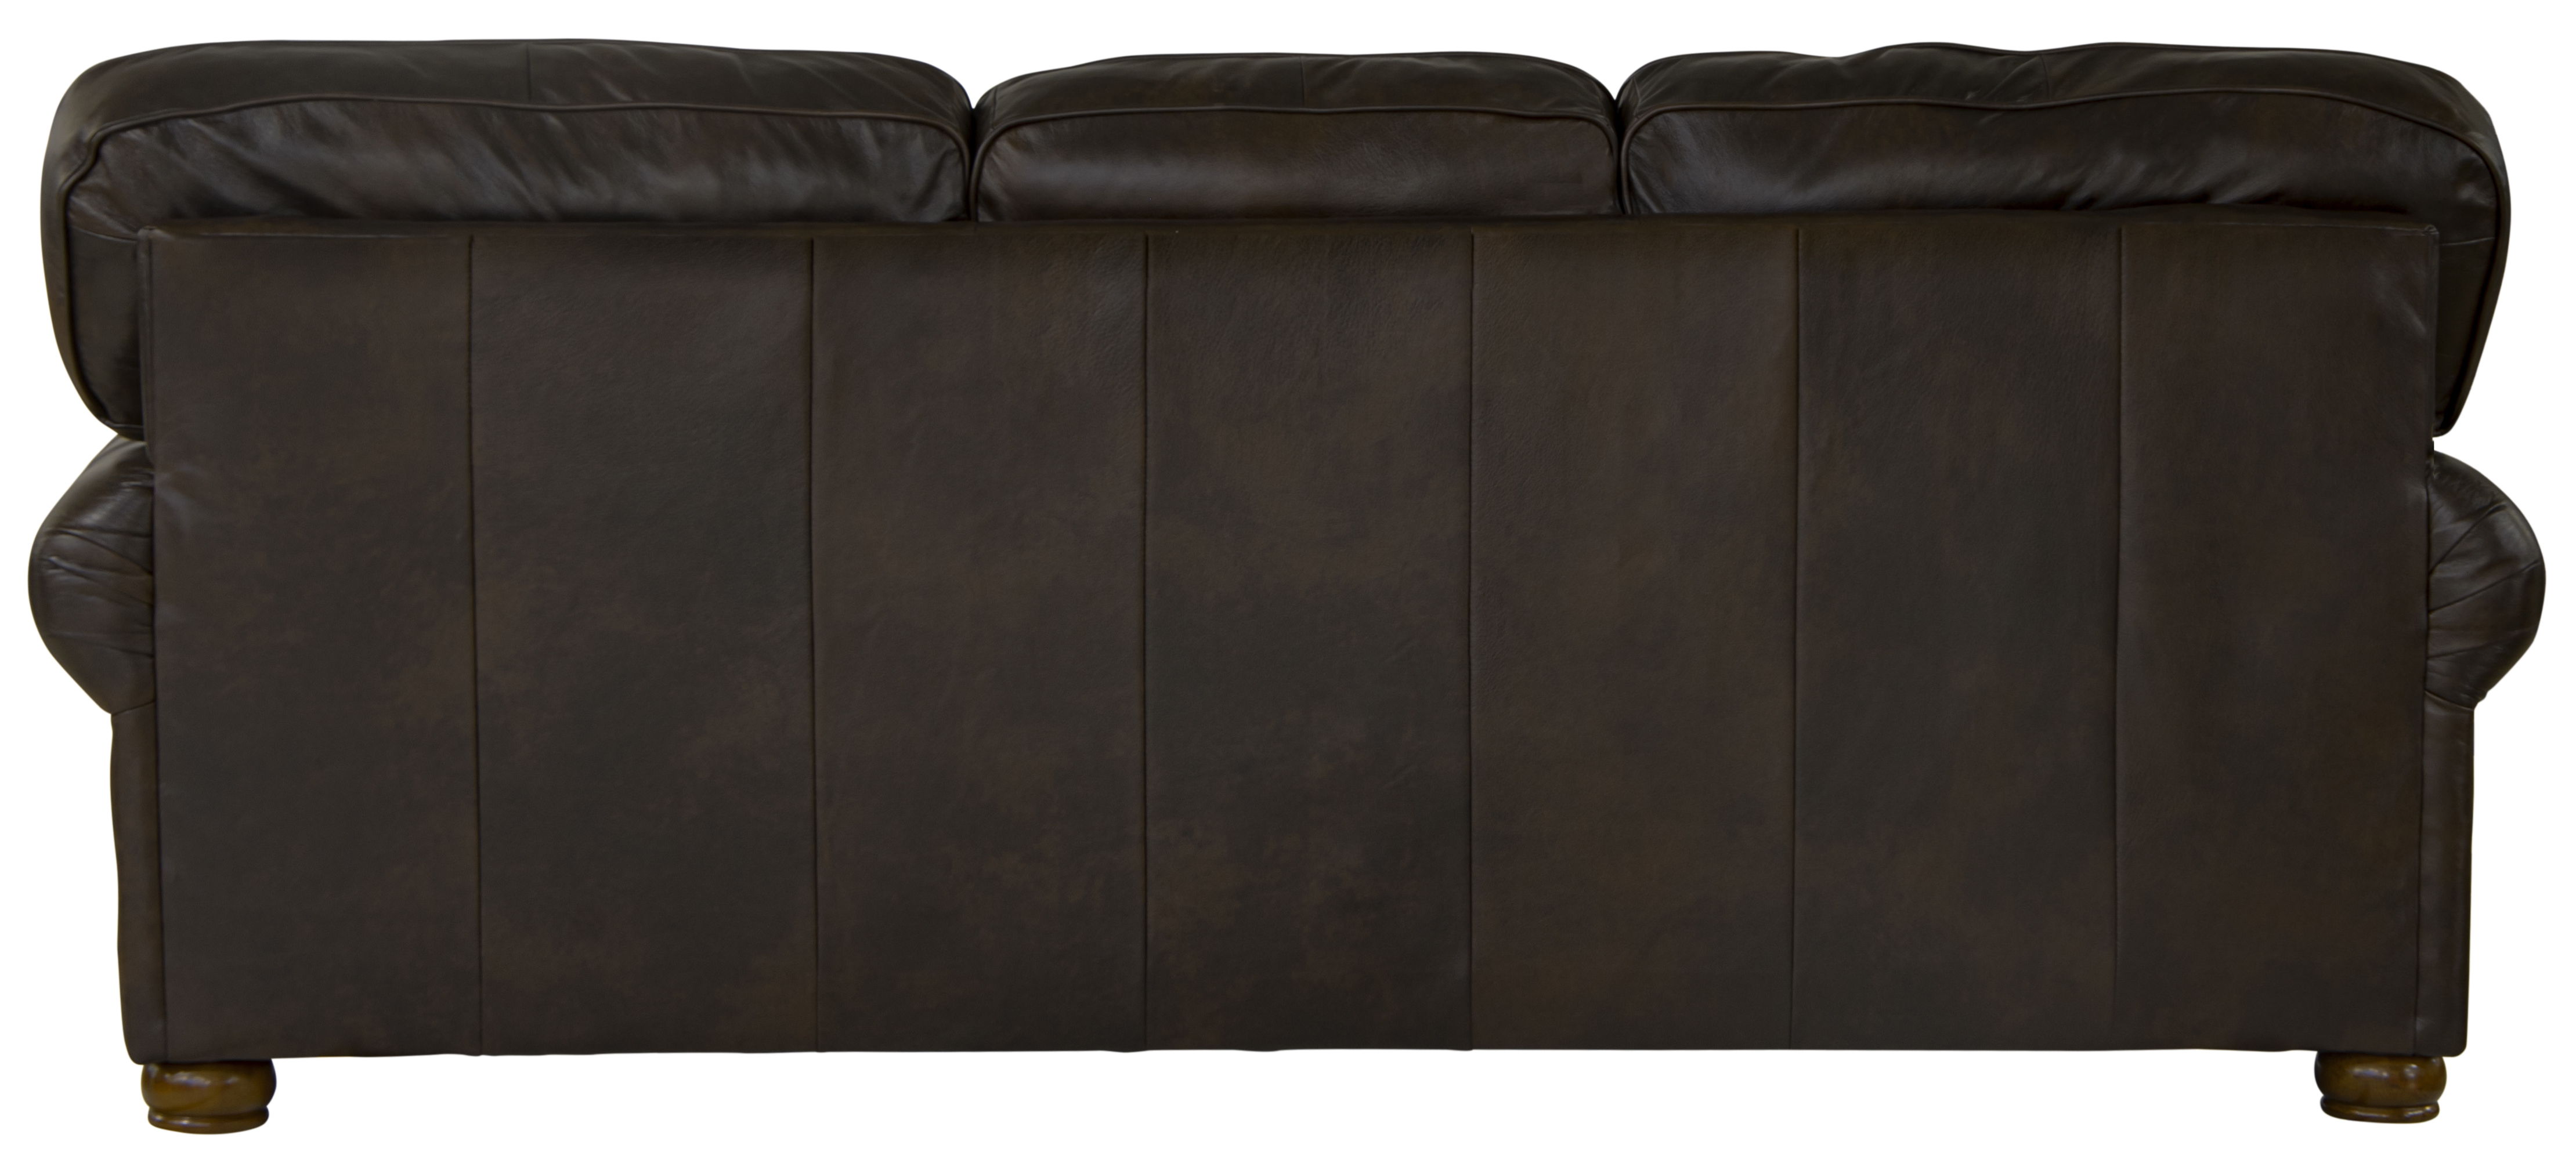 Roberto - Sofa - Cocoa - Leather - 5th Avenue Furniture